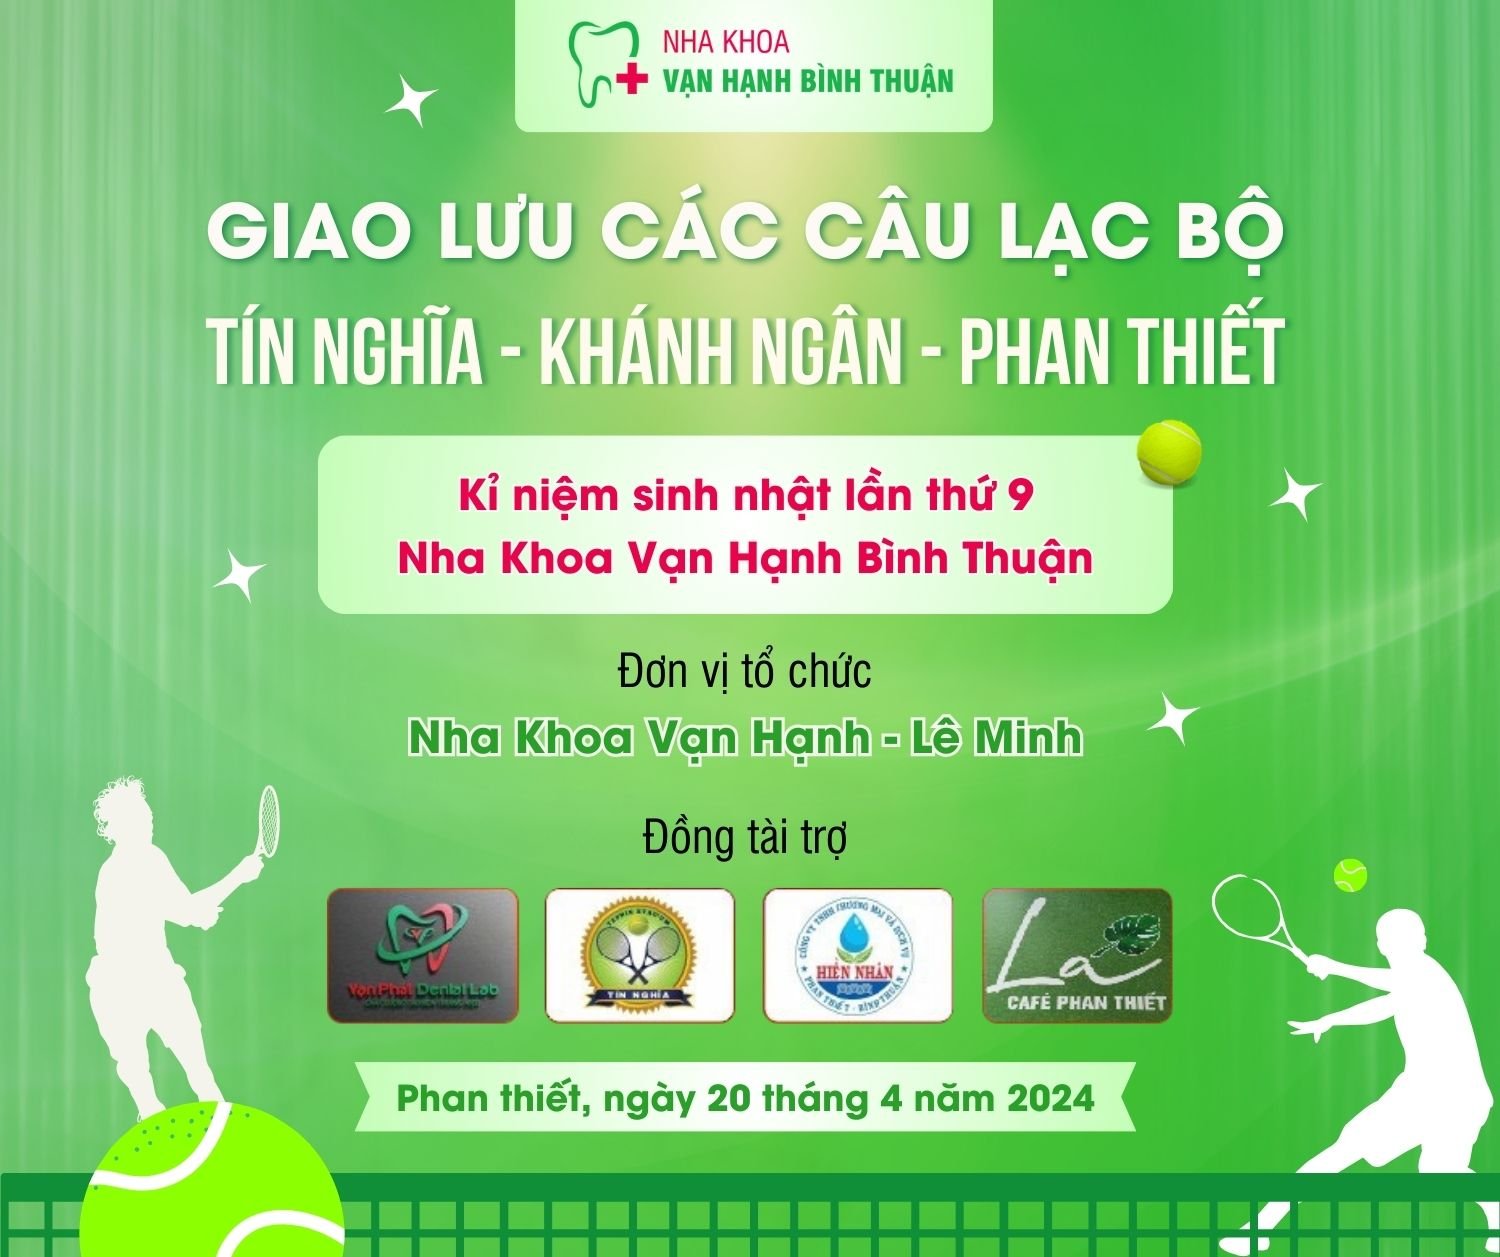 Nha khoa vạn hạnh Bình Thuận Tổ chức giải Tennis giao lưu các câu lạc bộ Tín Nghĩa - Khánh Ngân - Phan Thiết